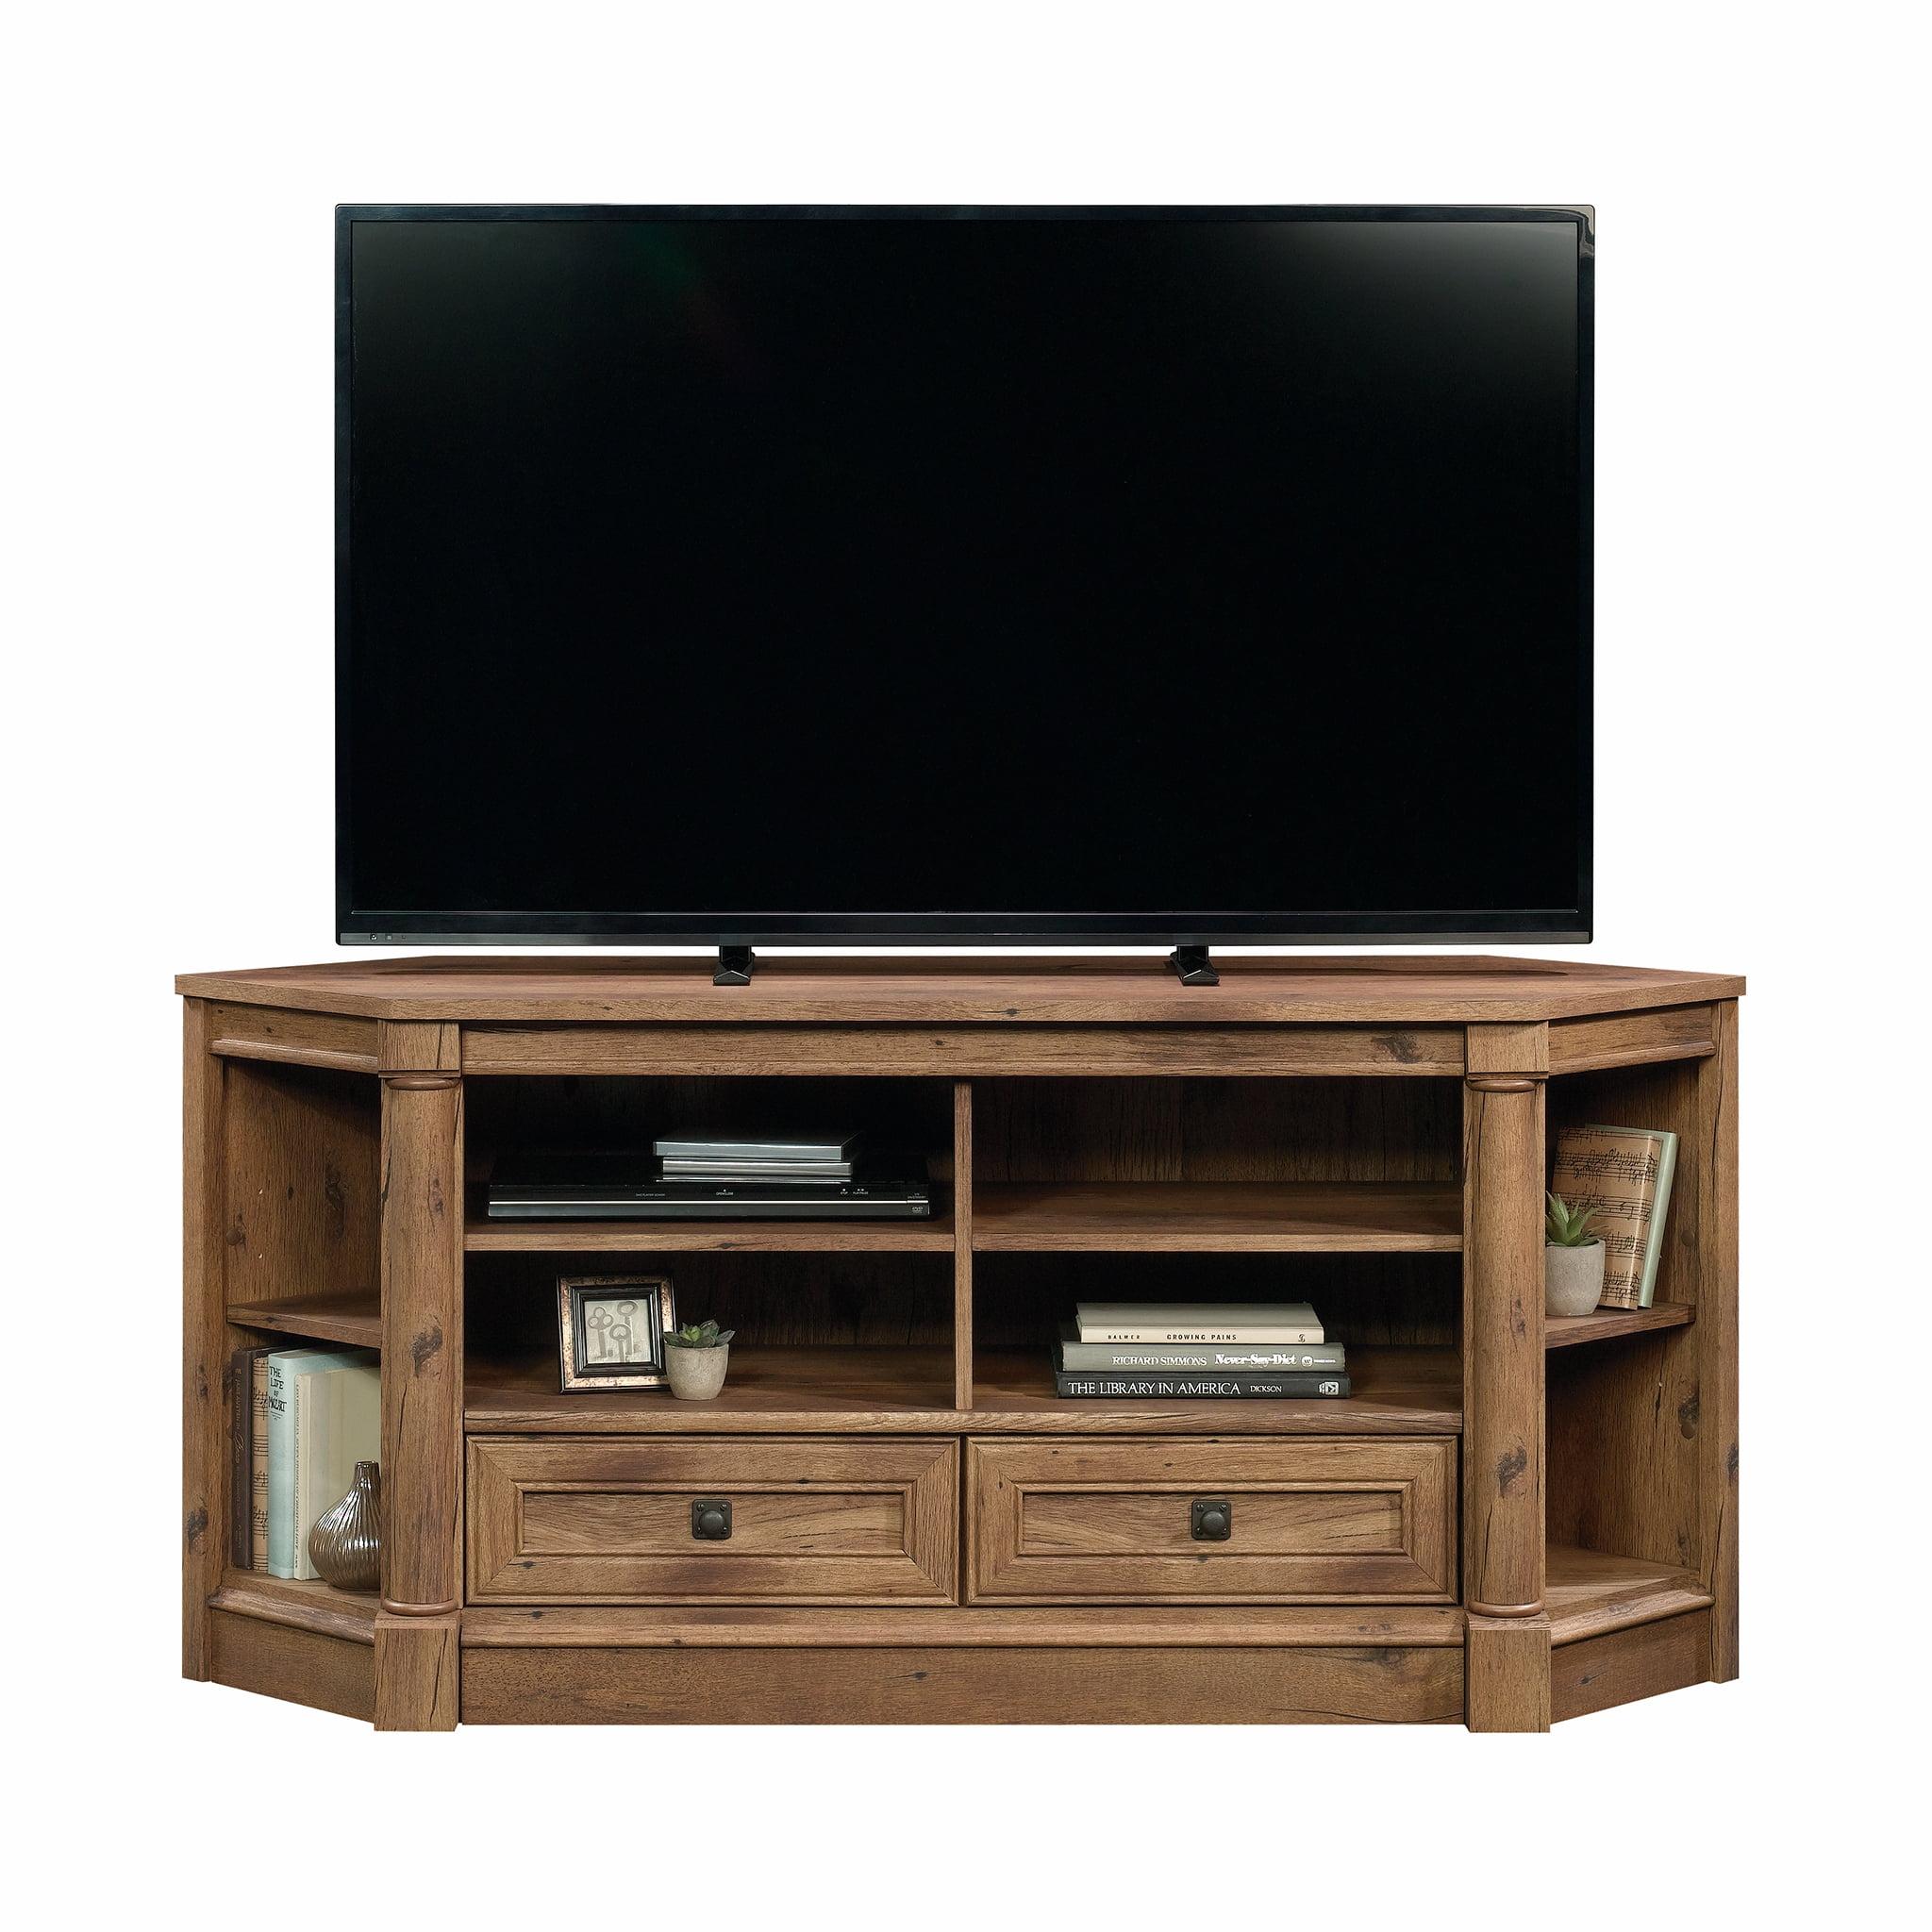 Elegant Black Corner TV Stand with Cabinet and Adjustable Shelves